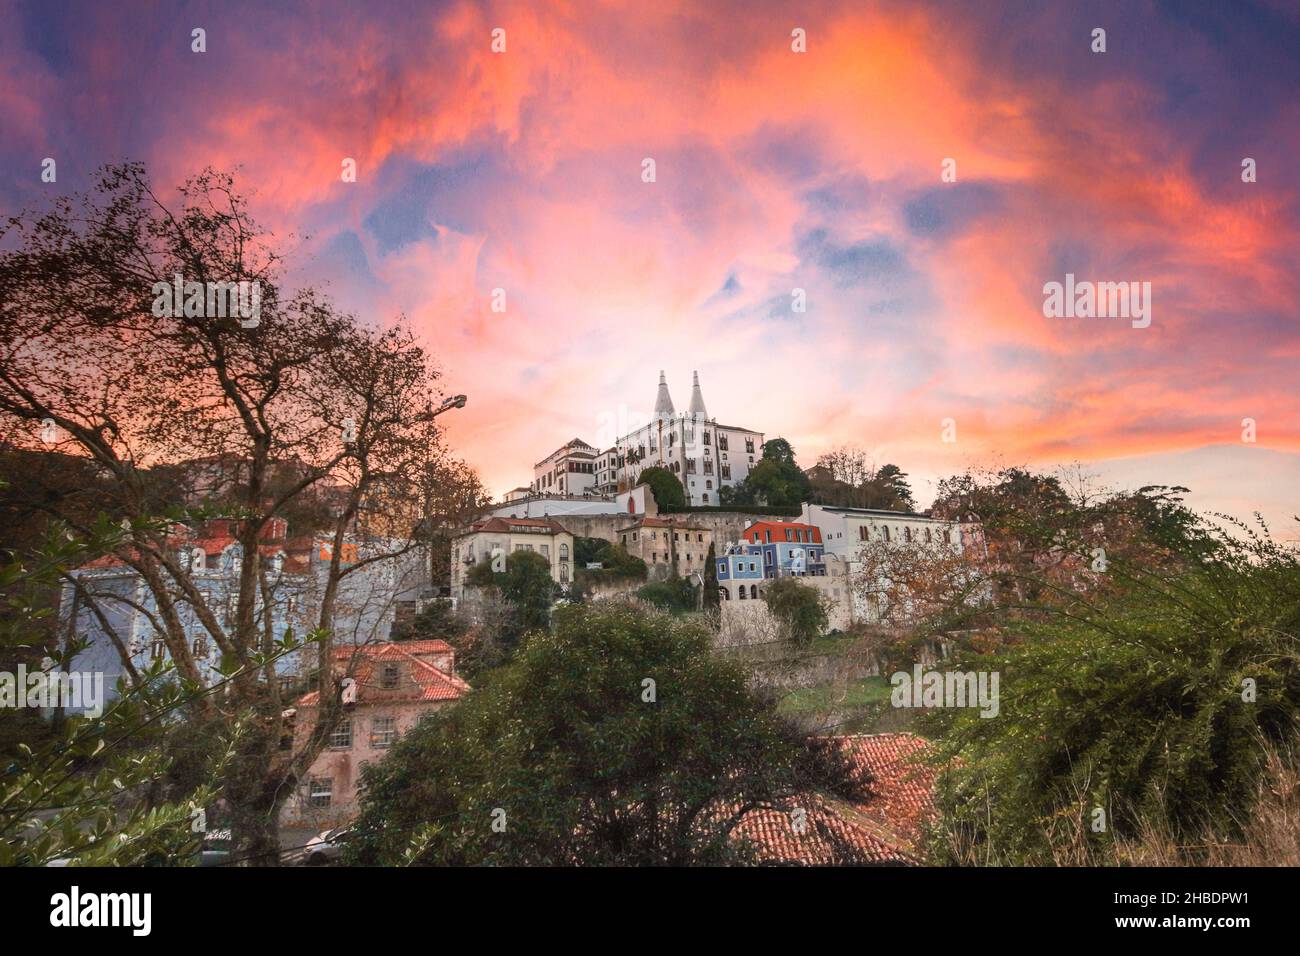 Village portugais de Sintra, site classé au patrimoine mondial de l'UNESCO.Palais national de Sintra en arrière-plan.Sintra, Portugal. Banque D'Images